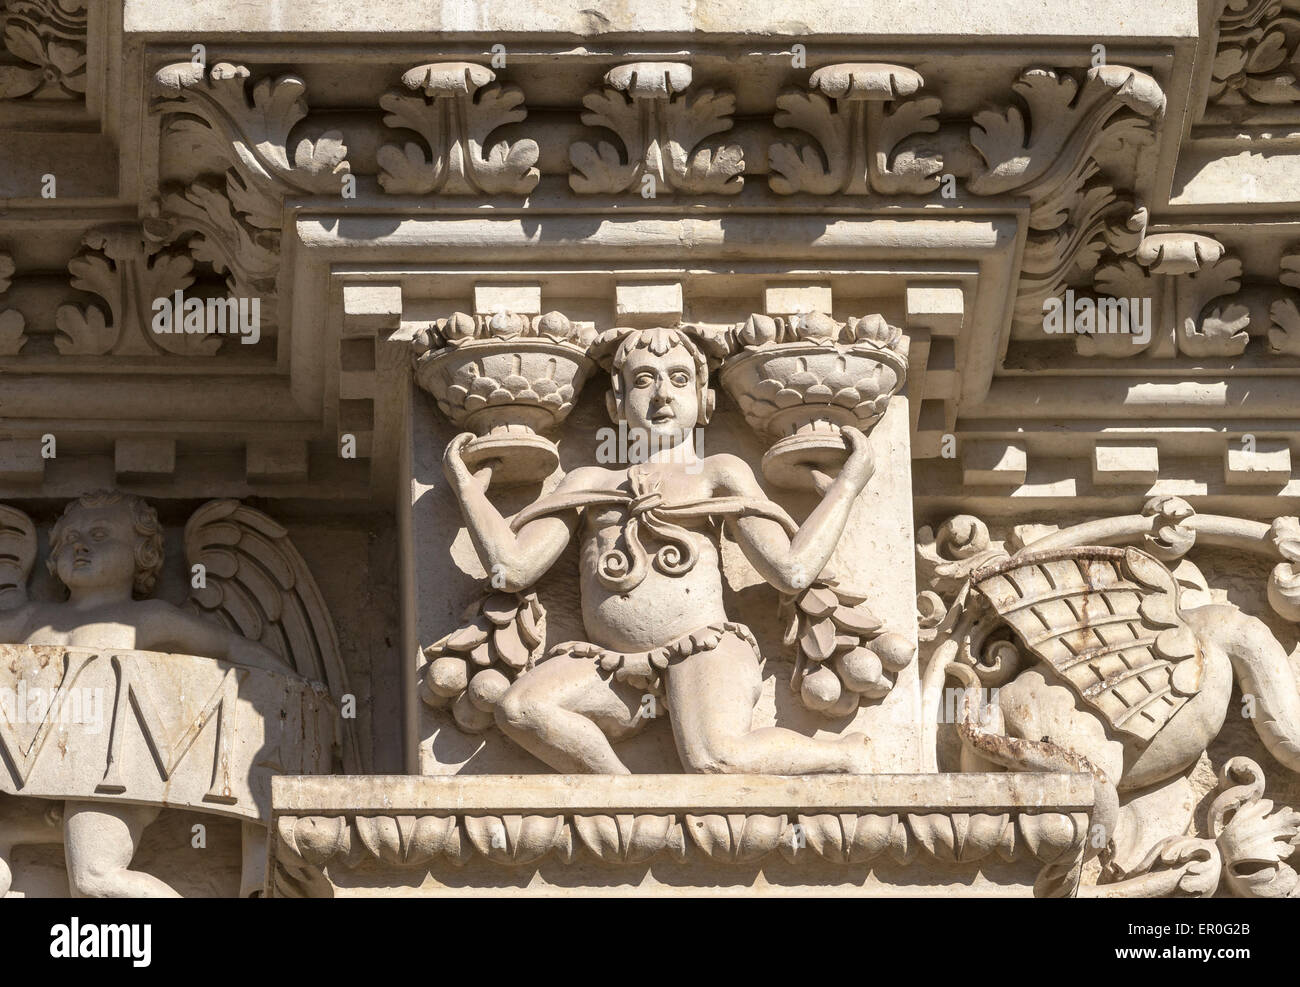 Detalle de la fachada de la Basílica di Santa Croce en Lecce en Apulia con ricas esculturas Foto de stock